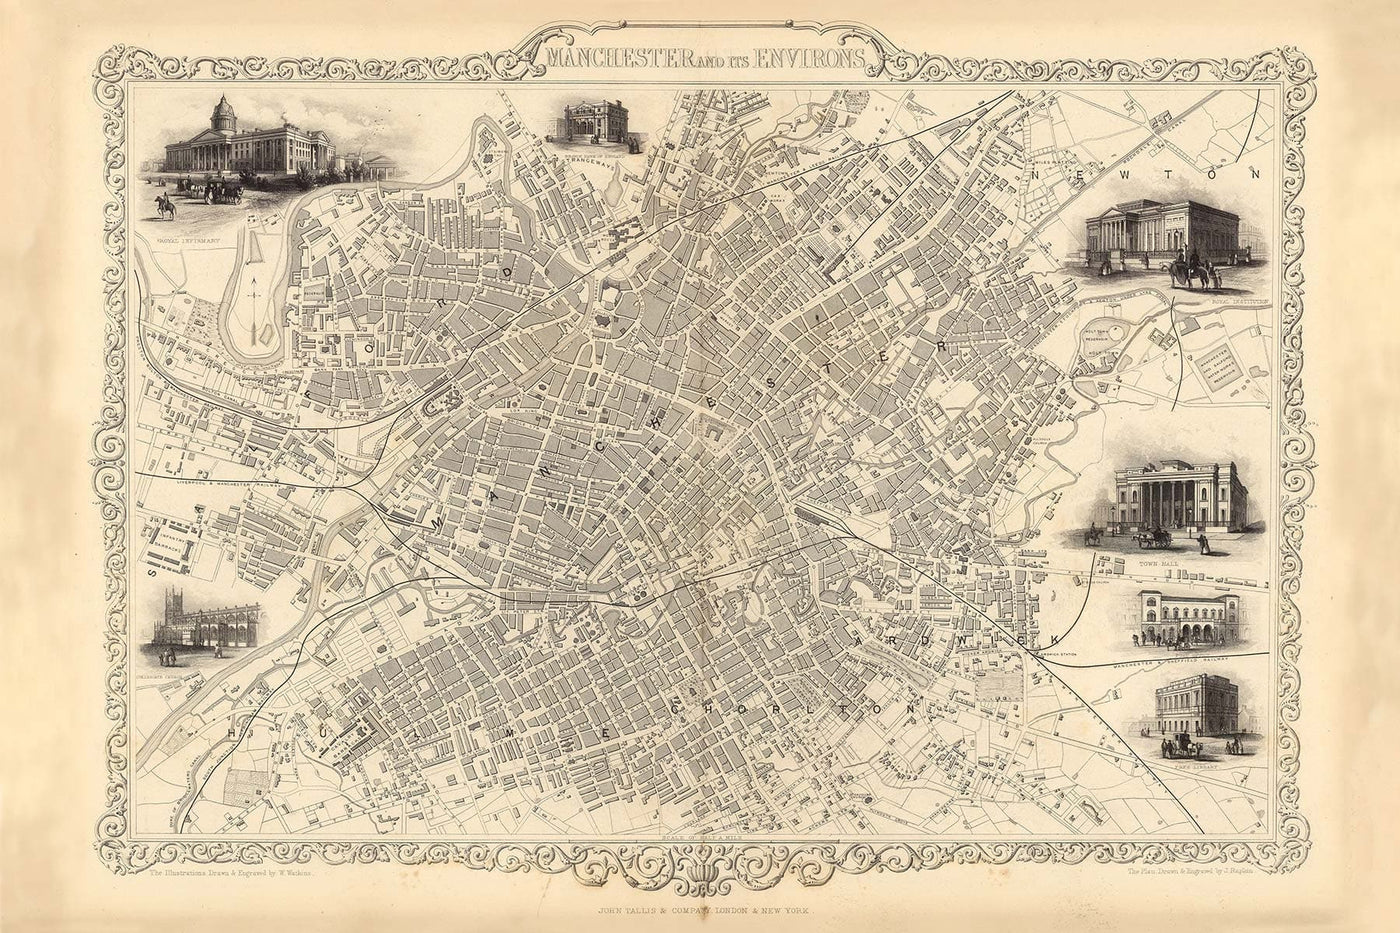 Masque / guêtre de Manchester avec carte vintage de Manchester et ses environs par John Rapkin, 1851